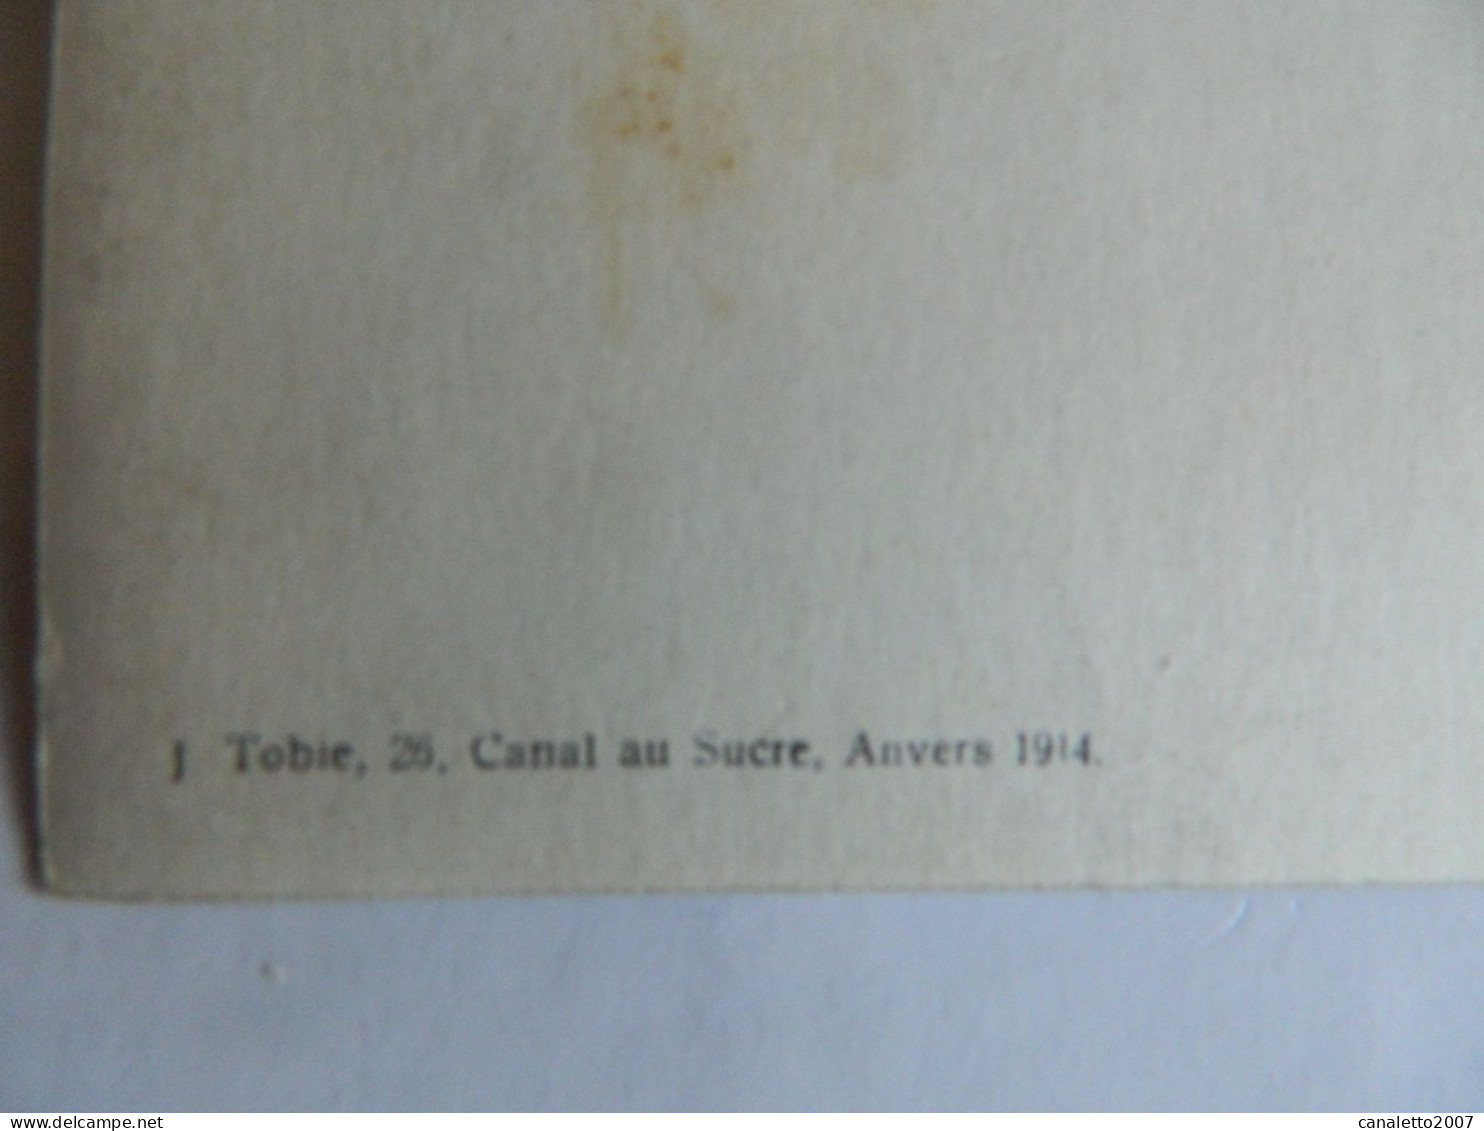 MILITARIA+ANVERS:PHOTO CARTE DE MILITAIRE EN 1913 FAIT PAR J.TOBIE 26 CANAL AU SUCRE ANVERS - Personnages